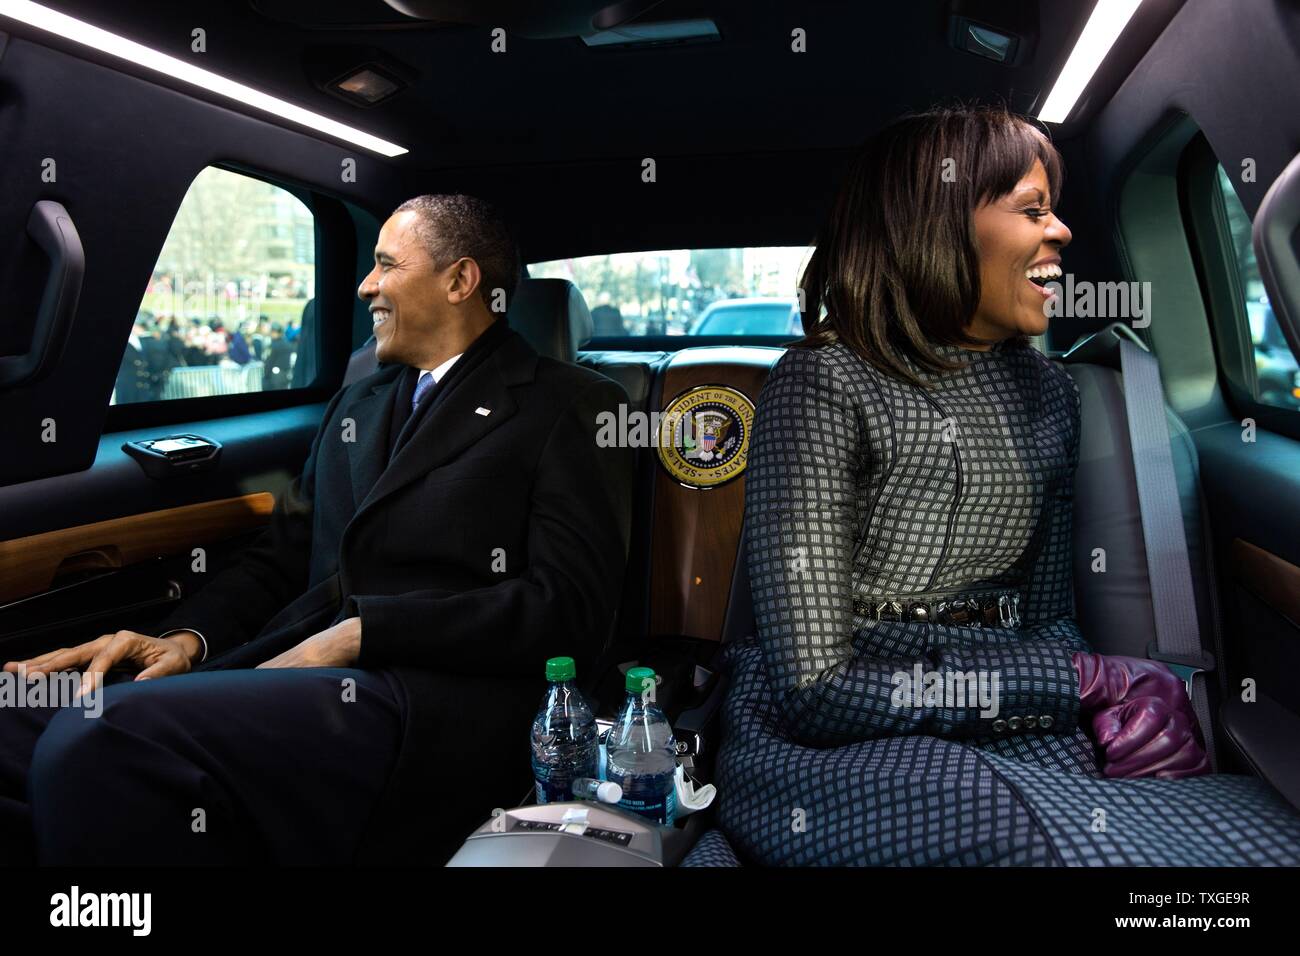 Photographie du Président Barack Obama et Première Dame Michelle Obama à cheval sur la route de l'investiture Présidentielle. Datée 2013 Banque D'Images